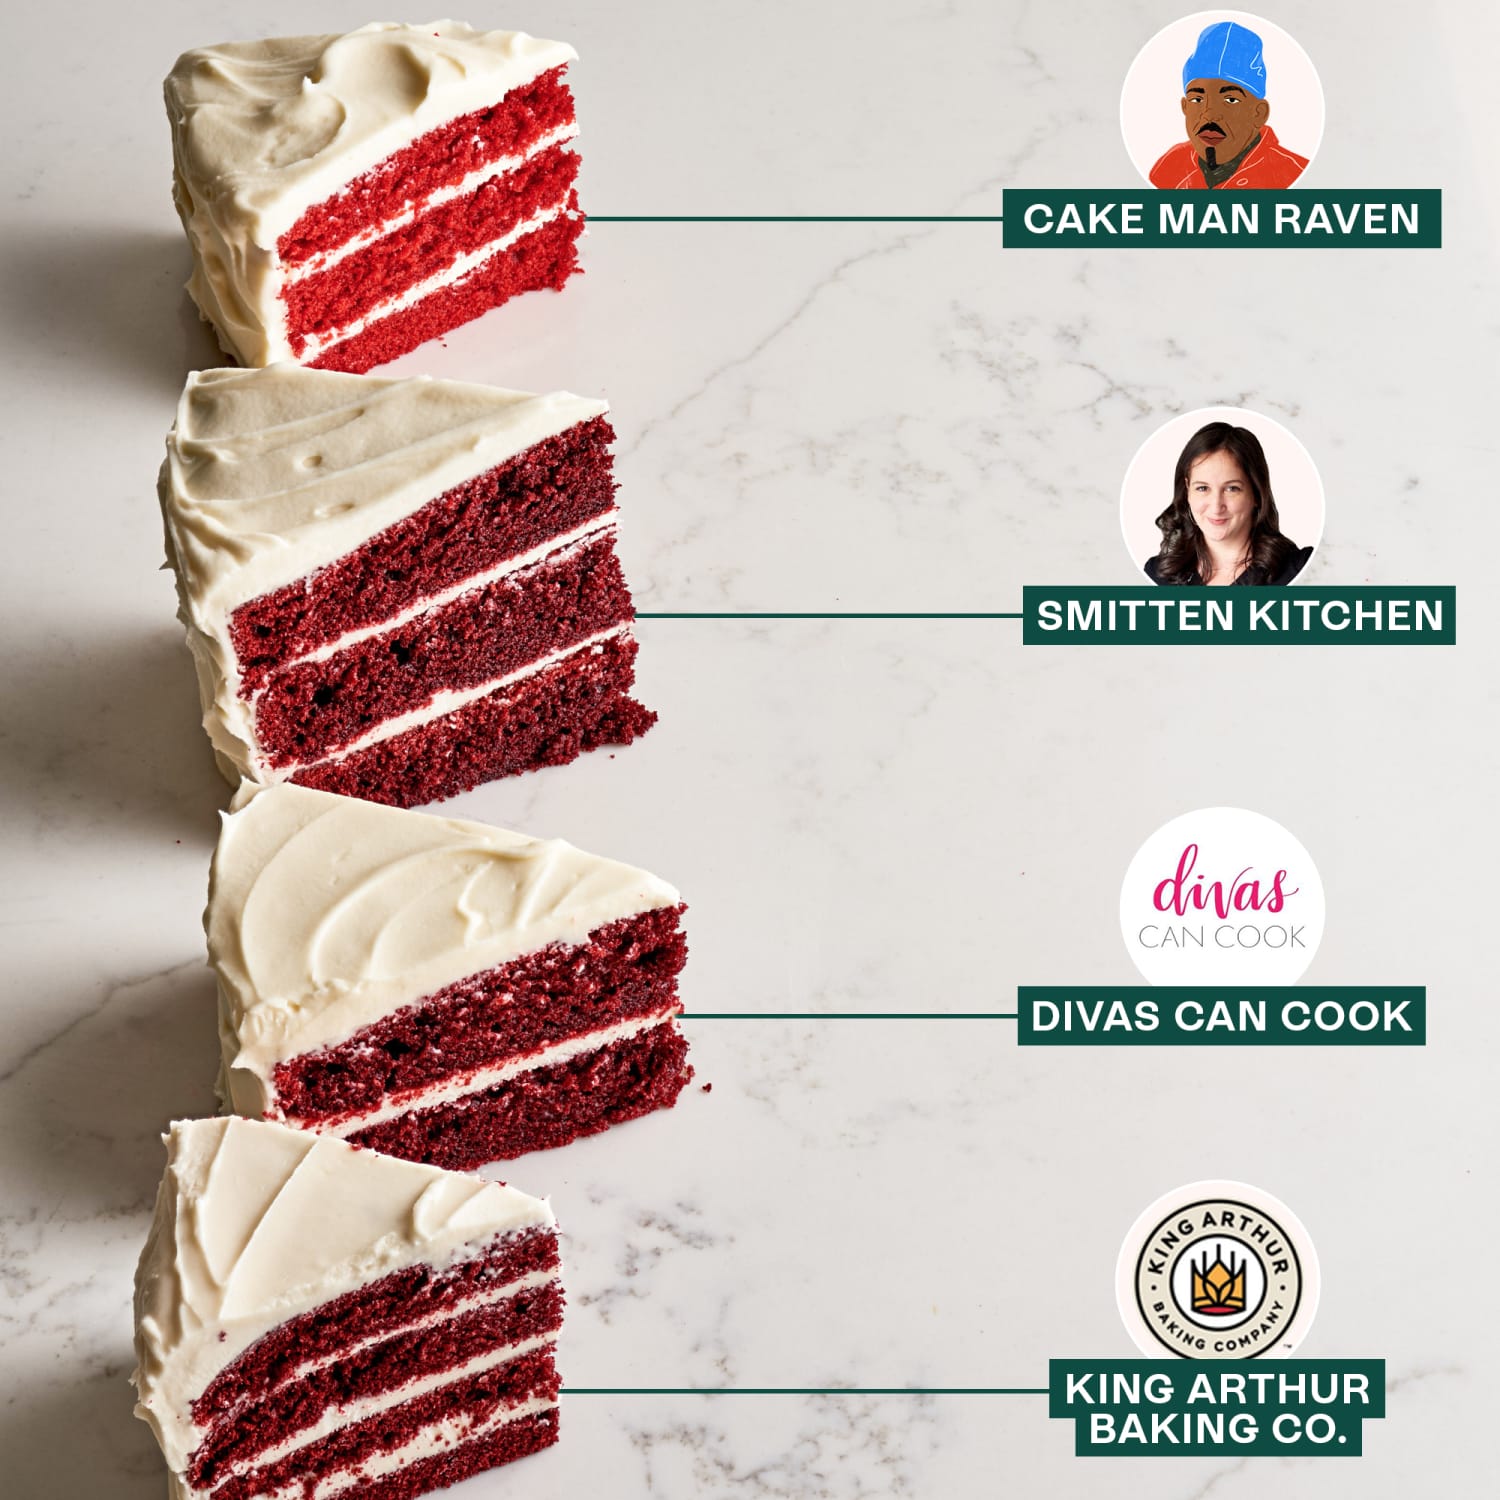 Red Velevt Cake Recipe: How to make Christmas Red Velvet Cake Recipe at  Home